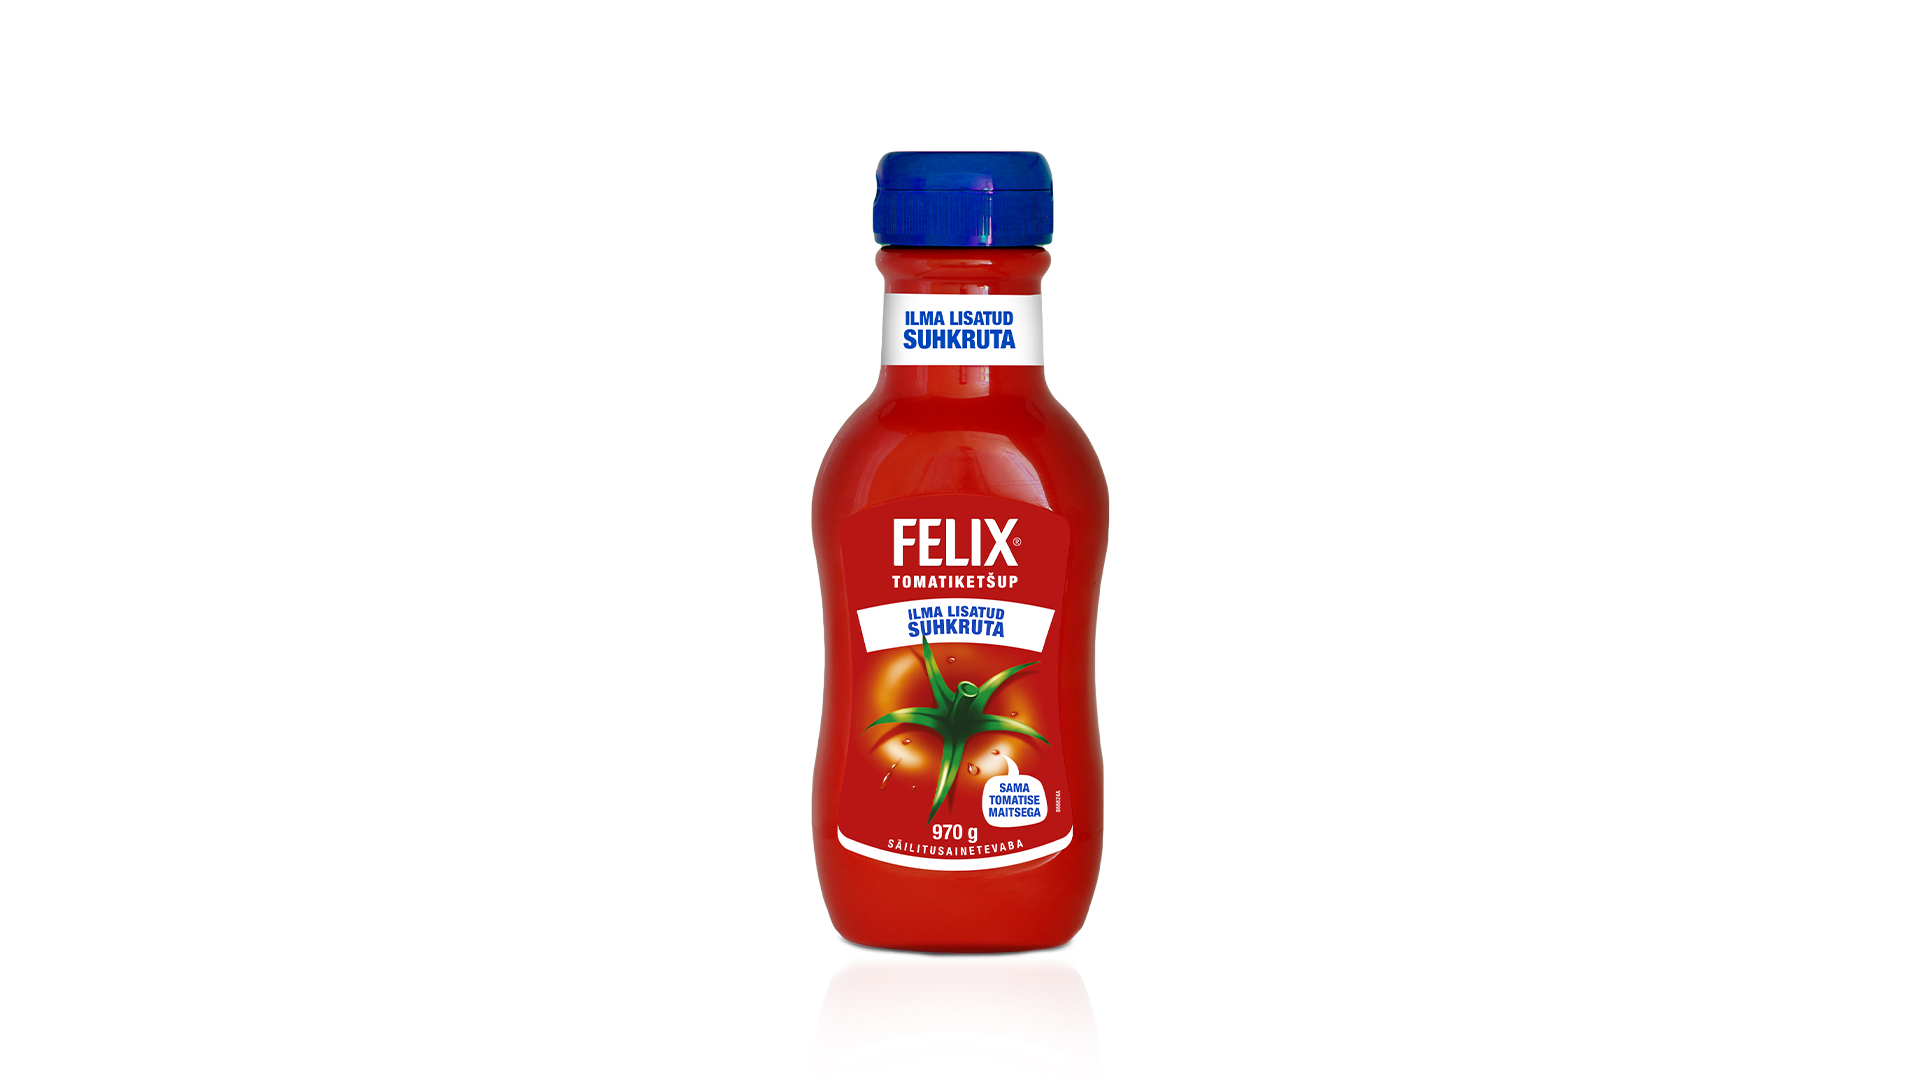 Felix – Tonight with Felix